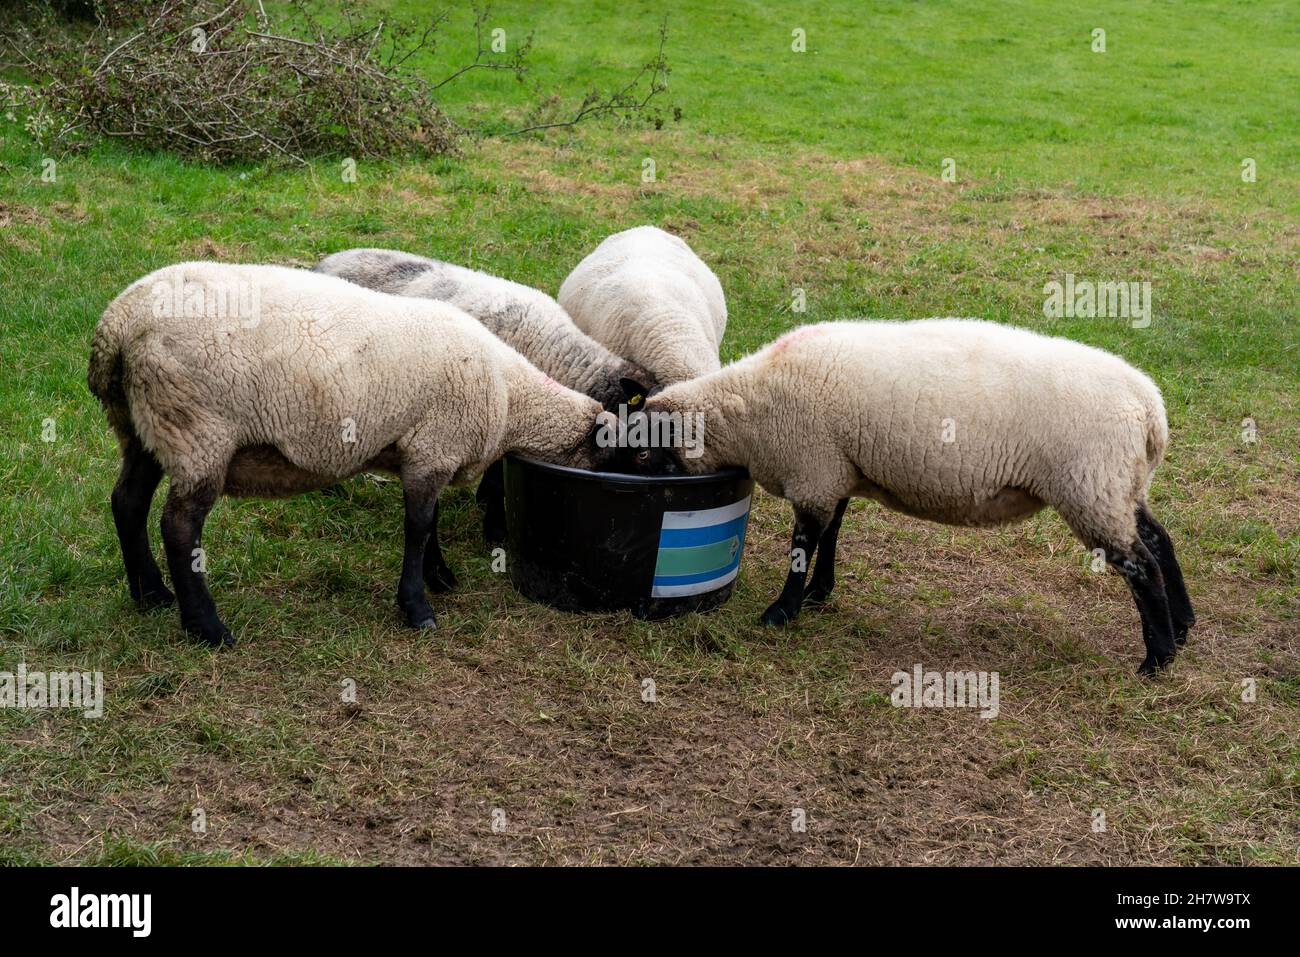 GREAT BOOKHAM, SURREY, UK - CIRCA il 2021 OTTOBRE: Pecore con i blackheads e le gambe che si nutrono su una vasca in una fattoria di pecore nella campagna inglese Foto Stock